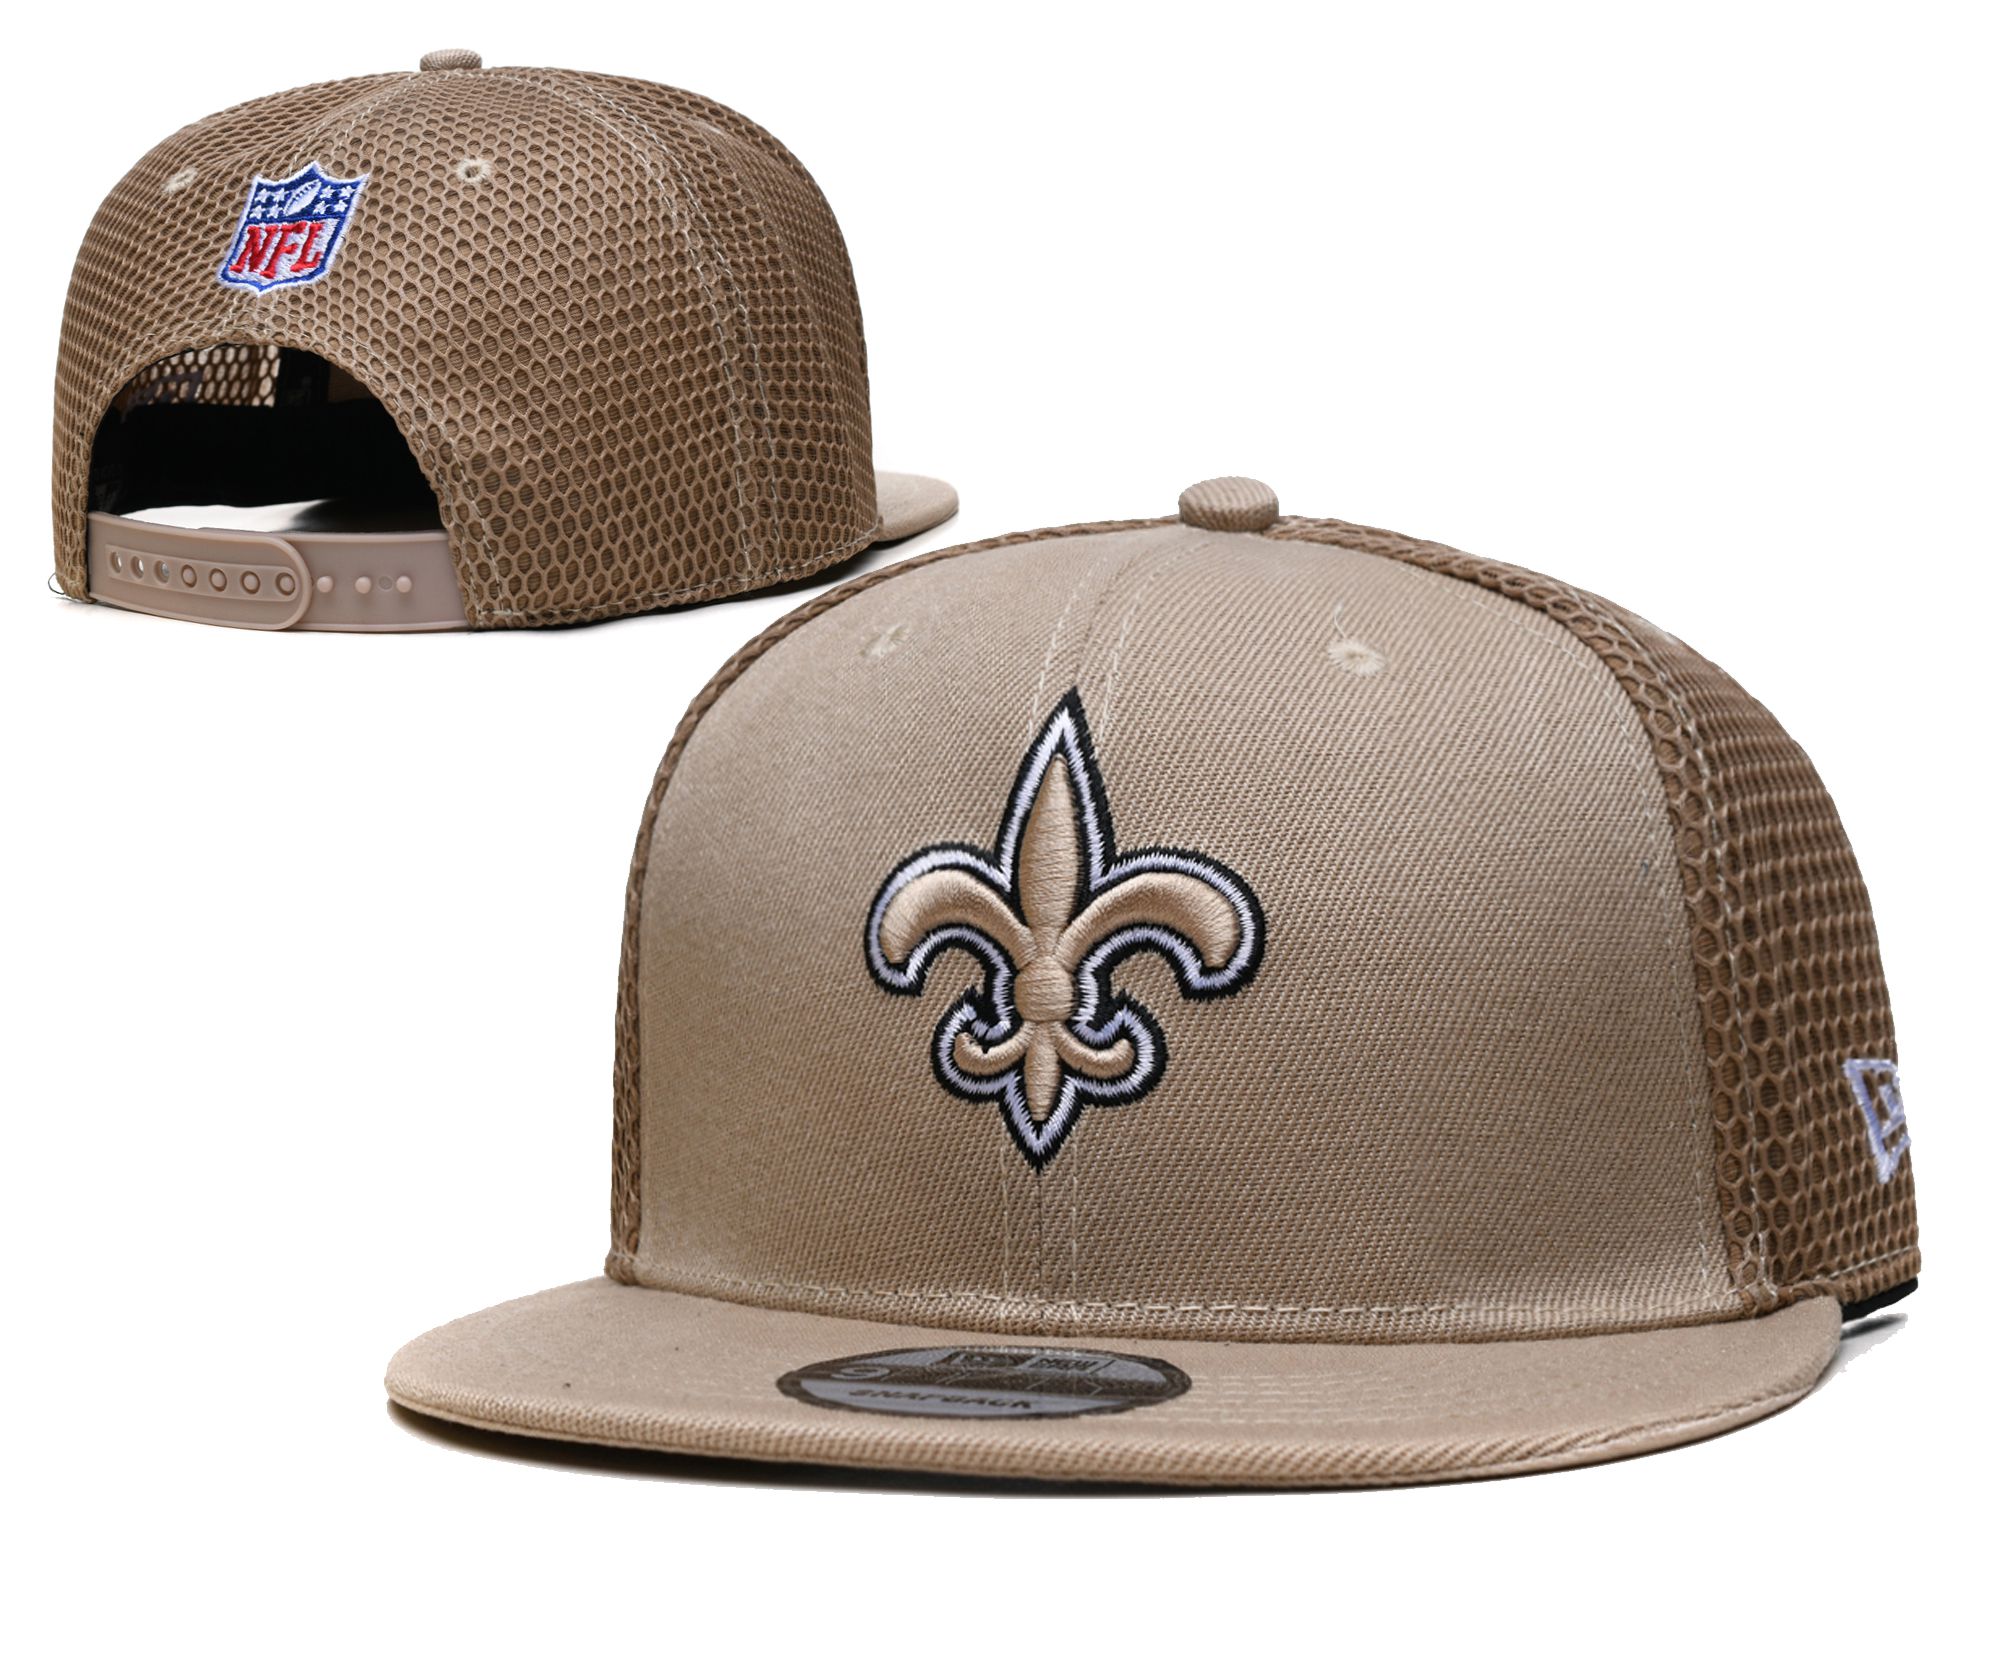 2022 NFL New Orleans Saints Hat TX 221->nfl hats->Sports Caps